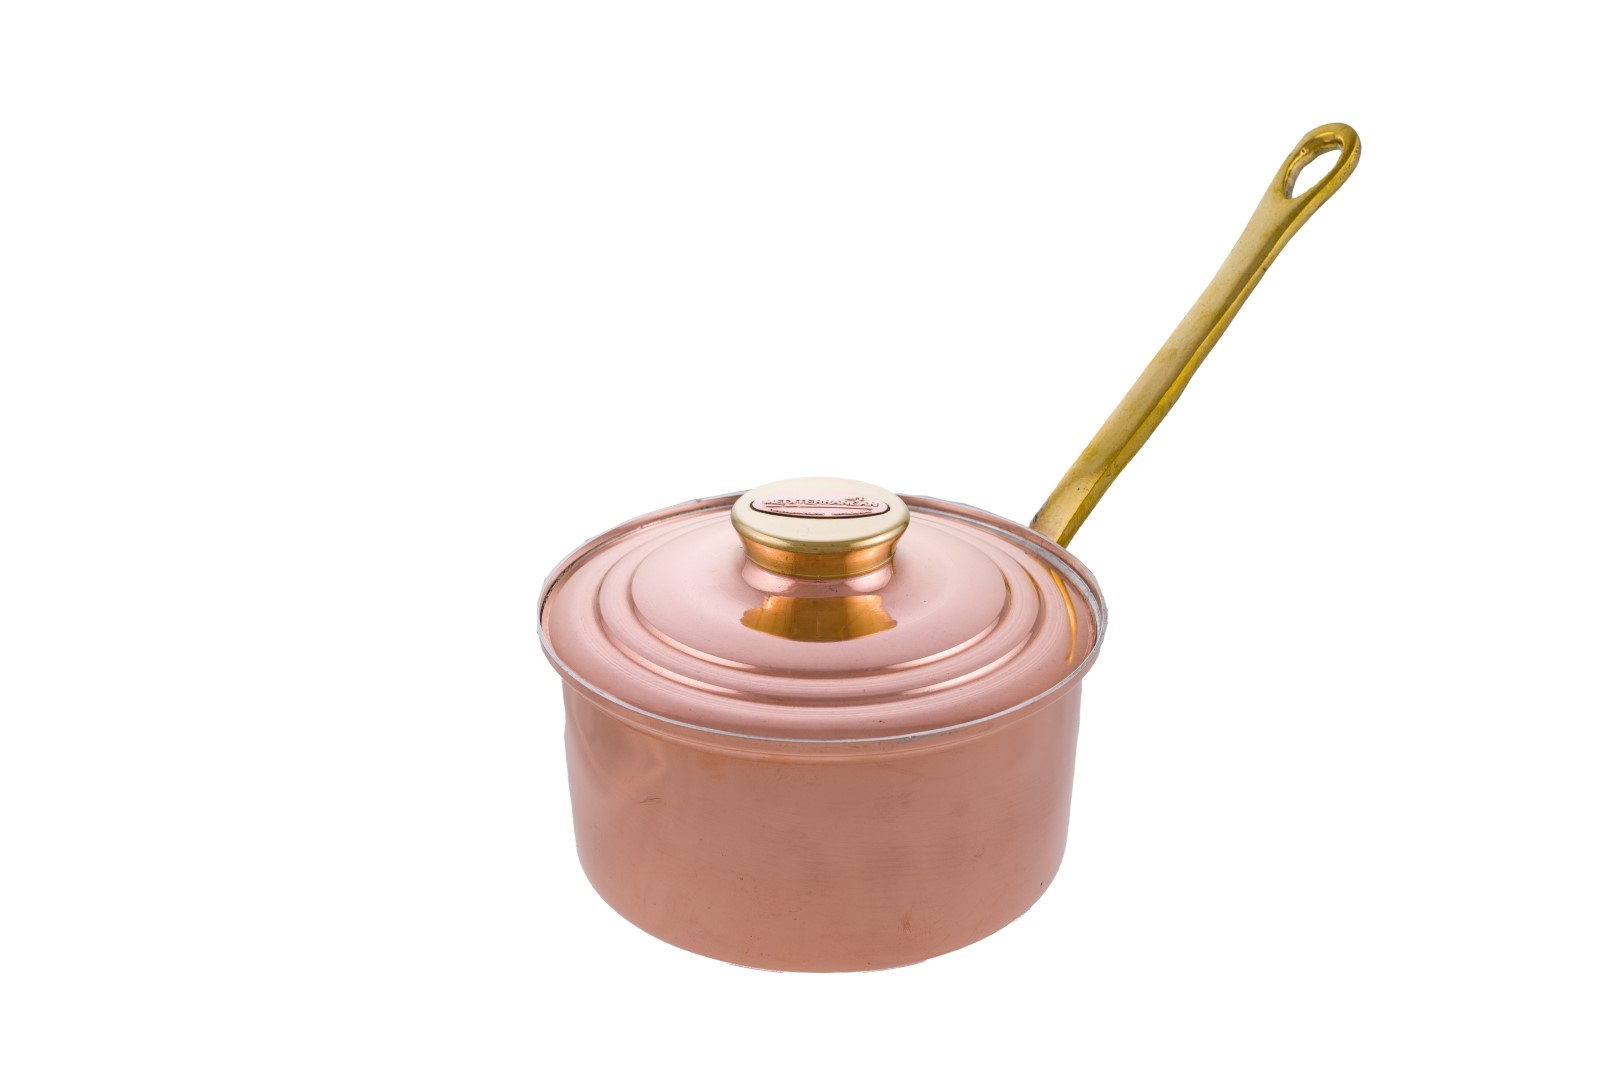 Copper Items - Copper Milk Pots